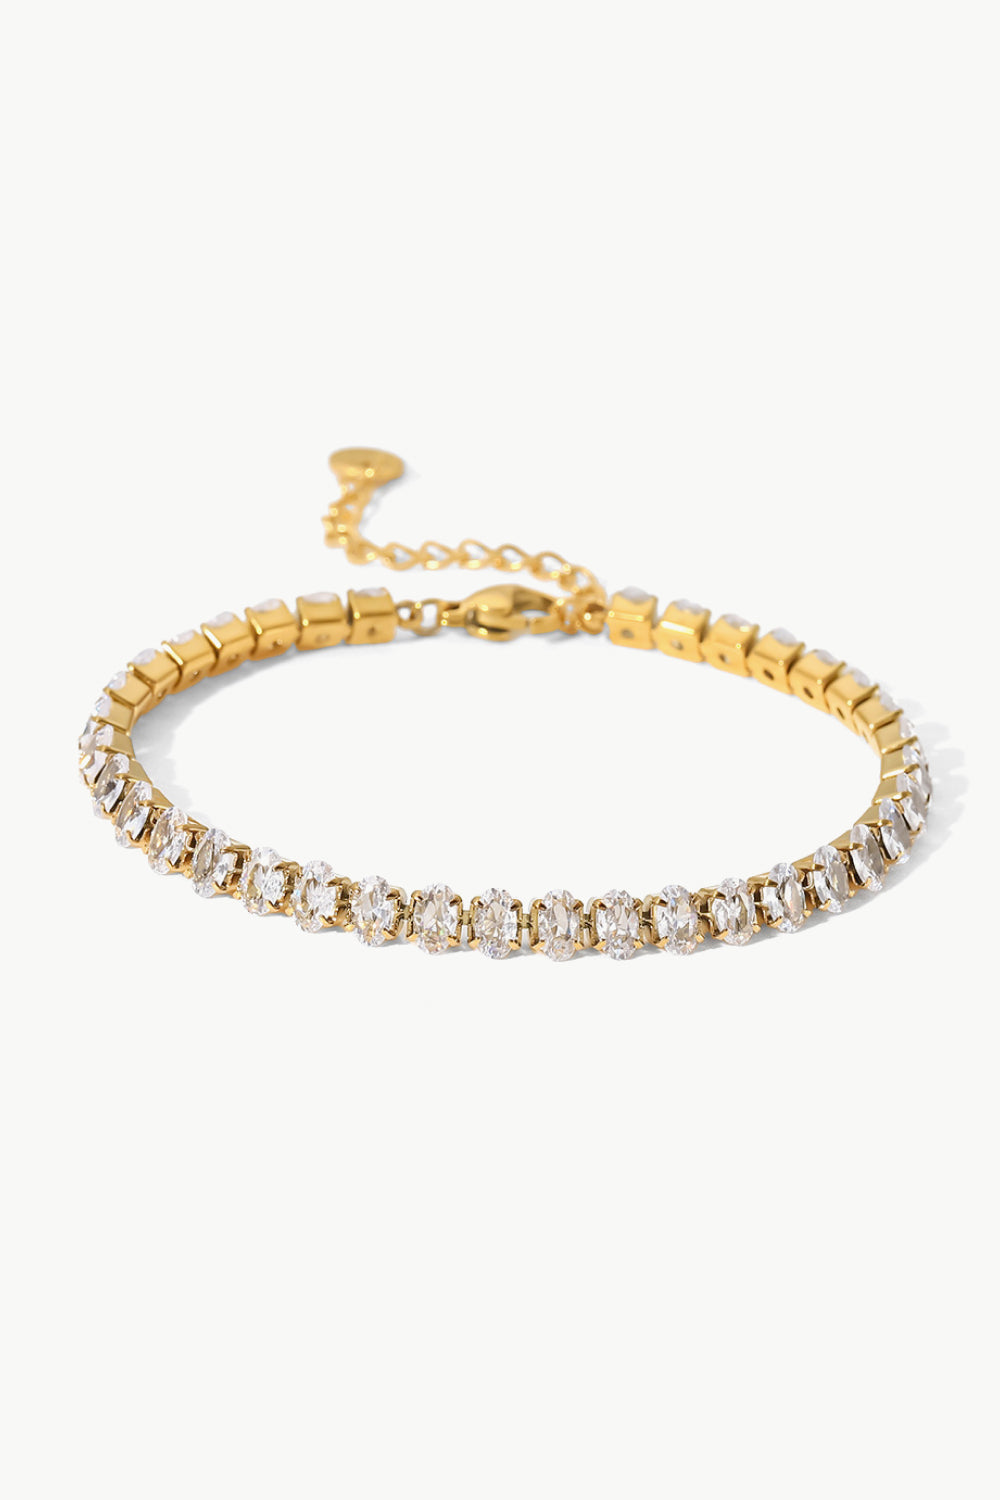 Inlaid Zircon 18K Gold Plated Bracelet - Gold / One Size - Women’s Jewelry - Bracelets - 3 - 2024